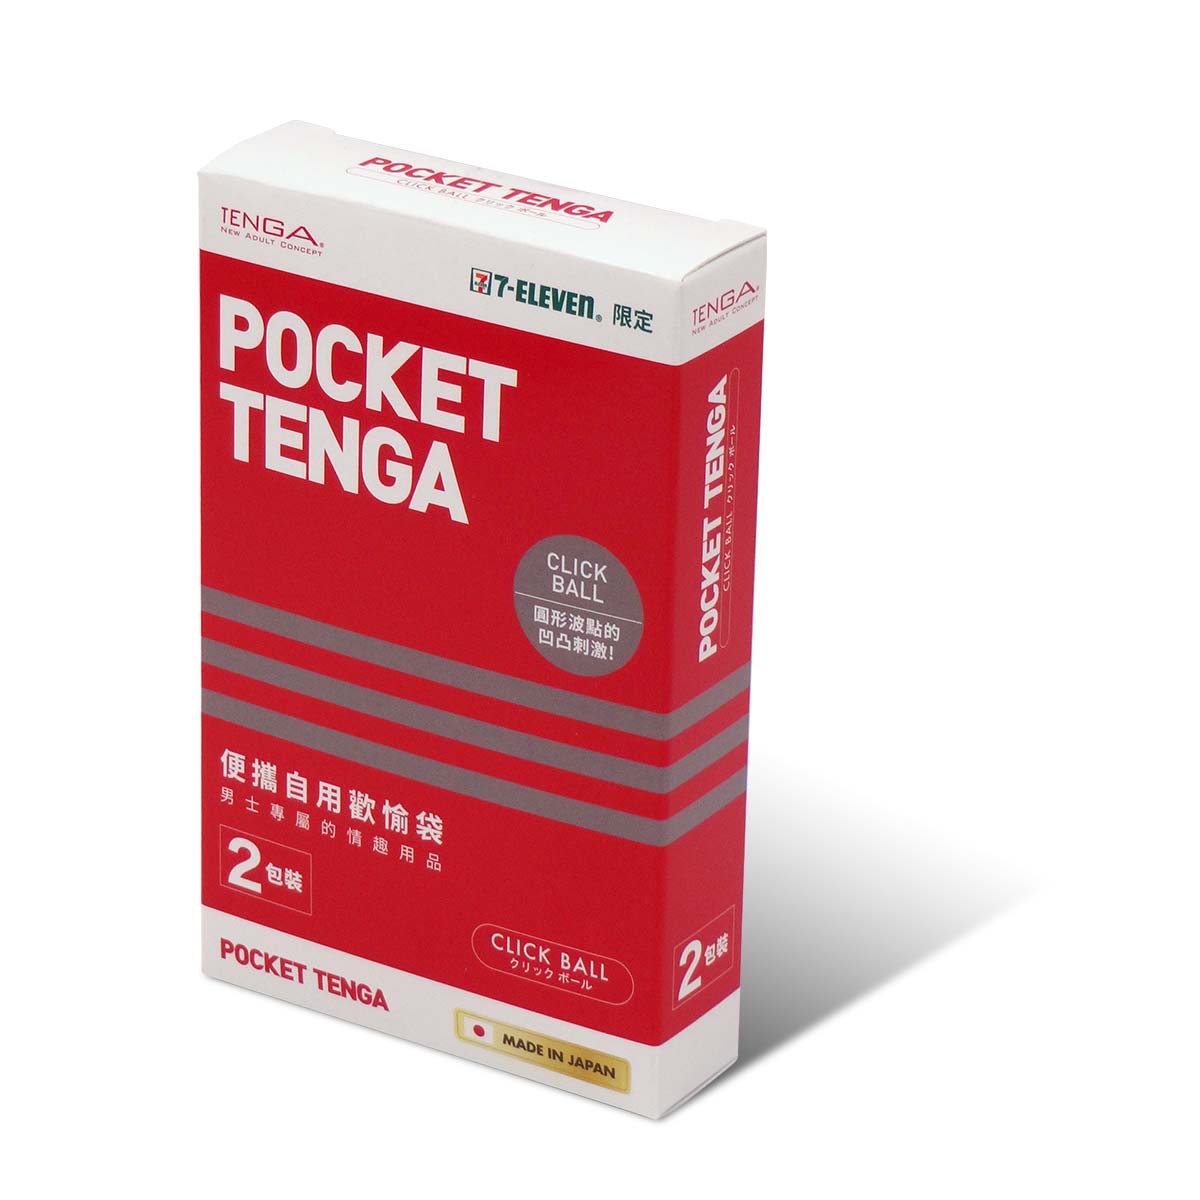 POCKET TENGA ポケット テンガ クリック ボール (レッド) ツインパック-p_1